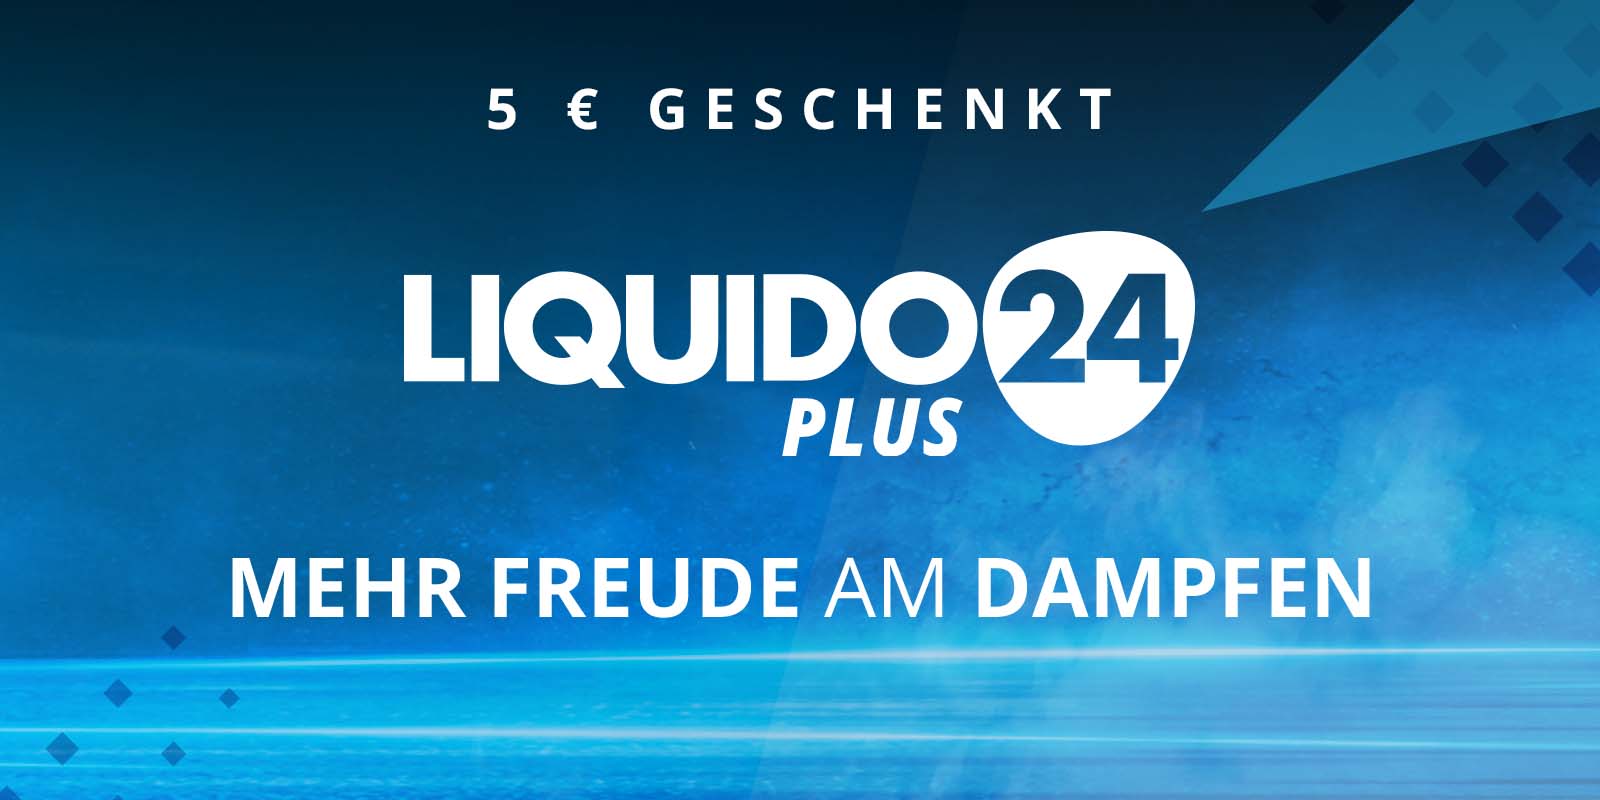 Liquido24 Plus - 5 € geschenkt!